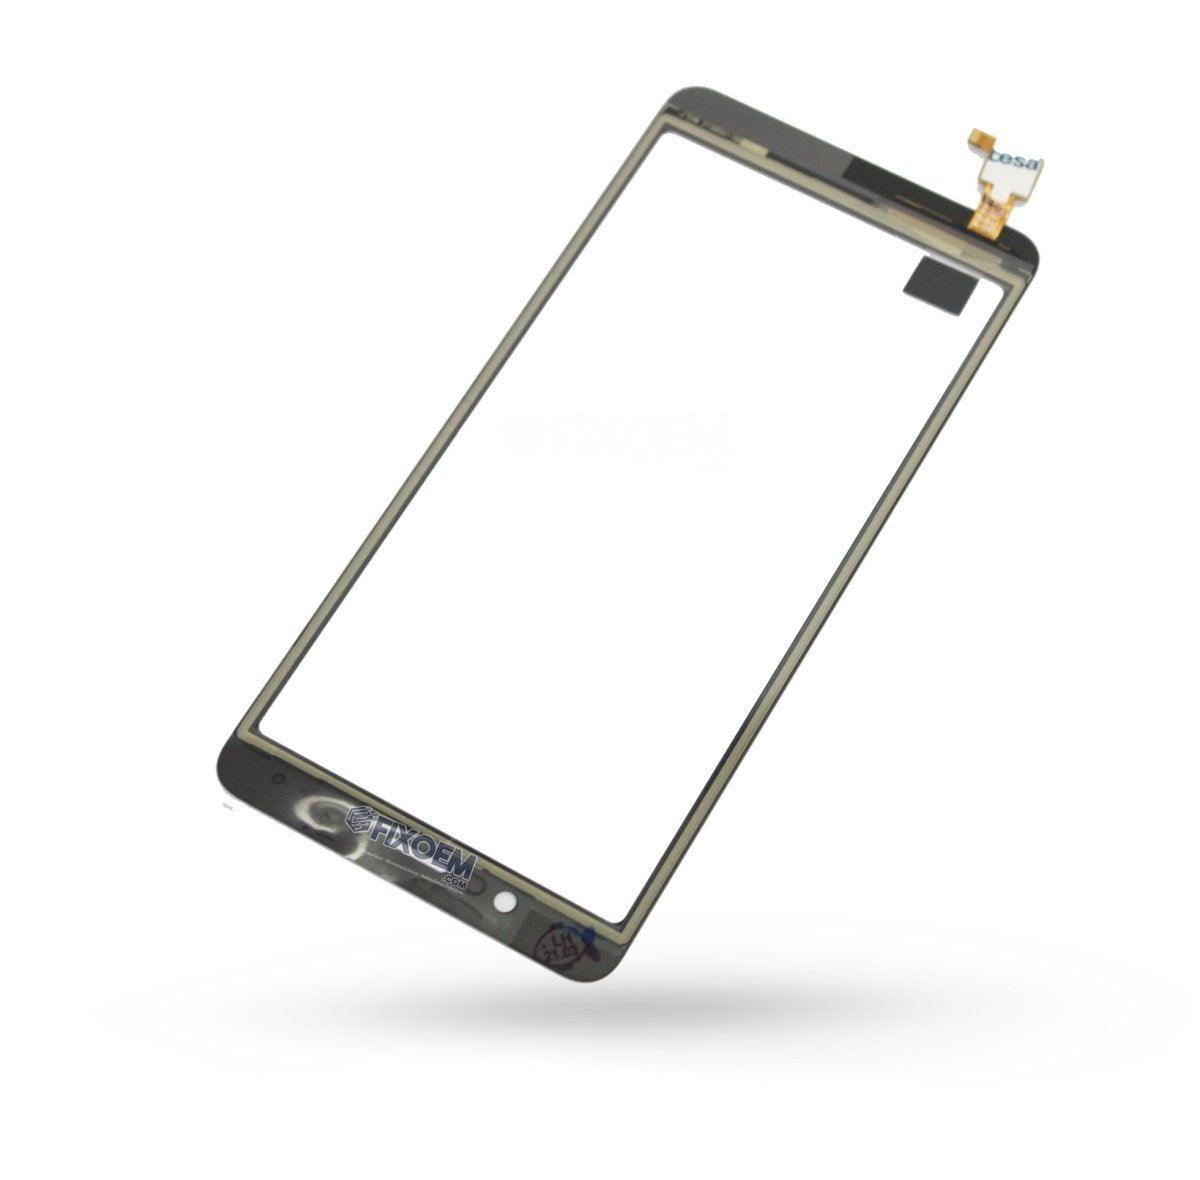 Touch Lanix M5 a solo $ 110.00 Refaccion y puestos celulares, refurbish y microelectronica.- FixOEM